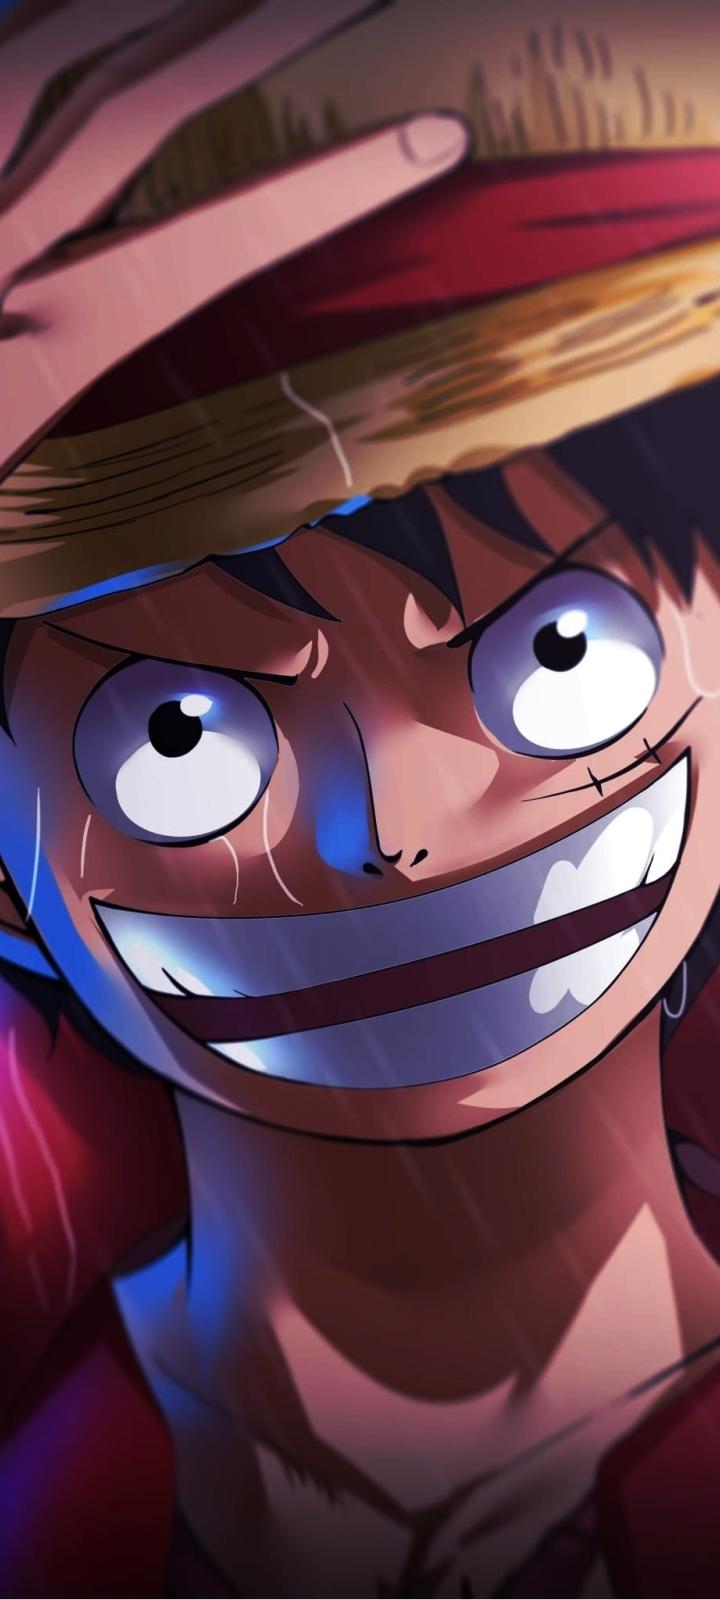 One Piece - Hình nền 720x1600 đẹp miễn phí: Nếu bạn là fan của anime/manga One Piece thì đây chính là bức hình nền tuyệt vời mà bạn không thể bỏ qua. Tải ngay hình nền đẹp miễn phí One Piece với độ phân giải 720x1600 để thể hiện tình yêu của bạn với bộ truyện này.